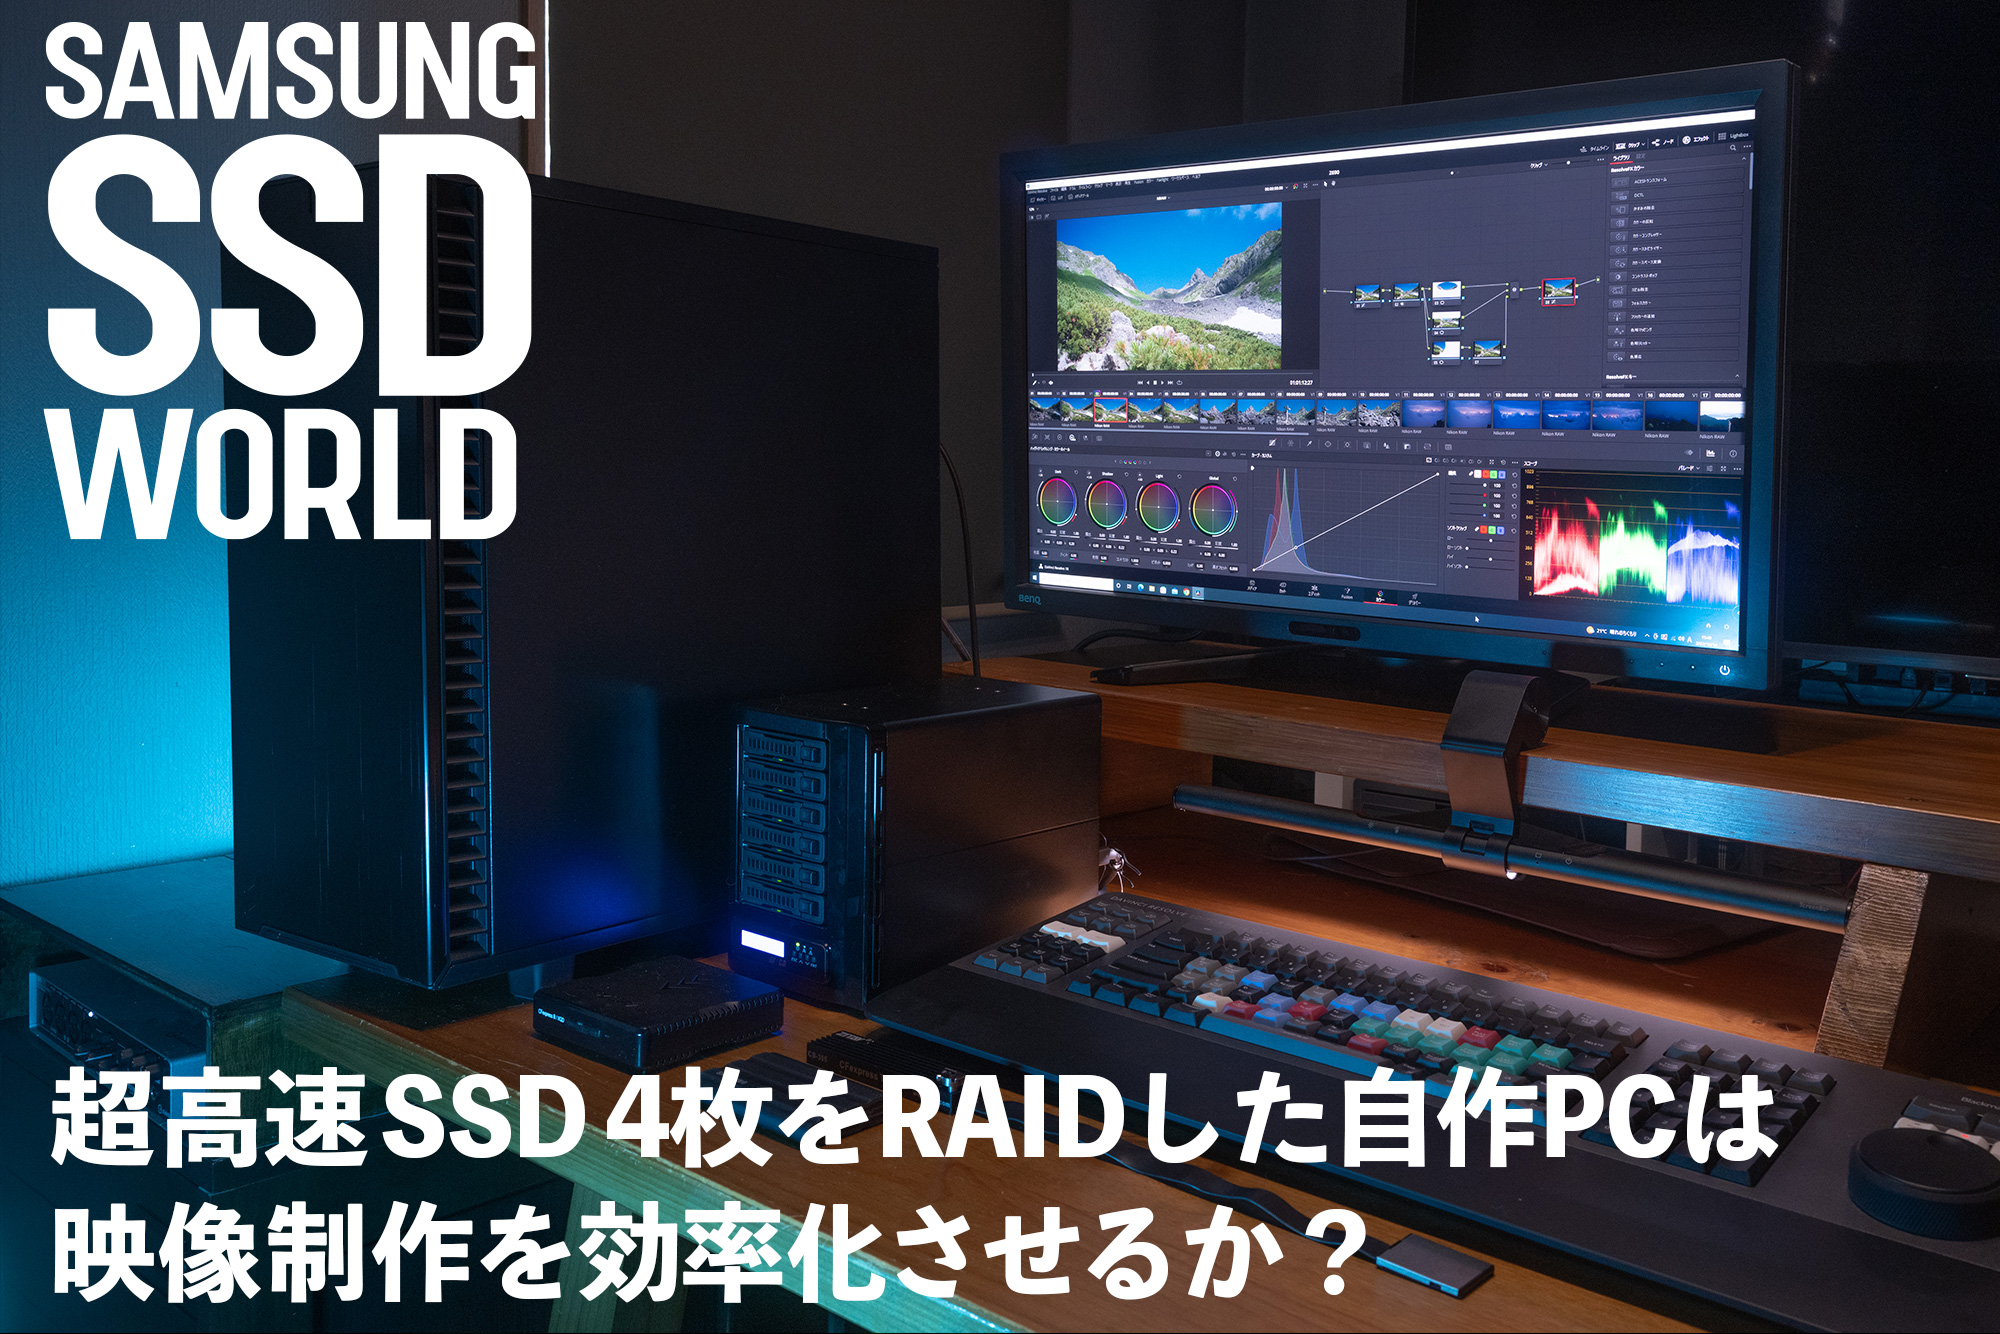 SAMSUNG SSD WORLD】超高速 SSD4枚をRAIDした自作PCは映像制作を効率化